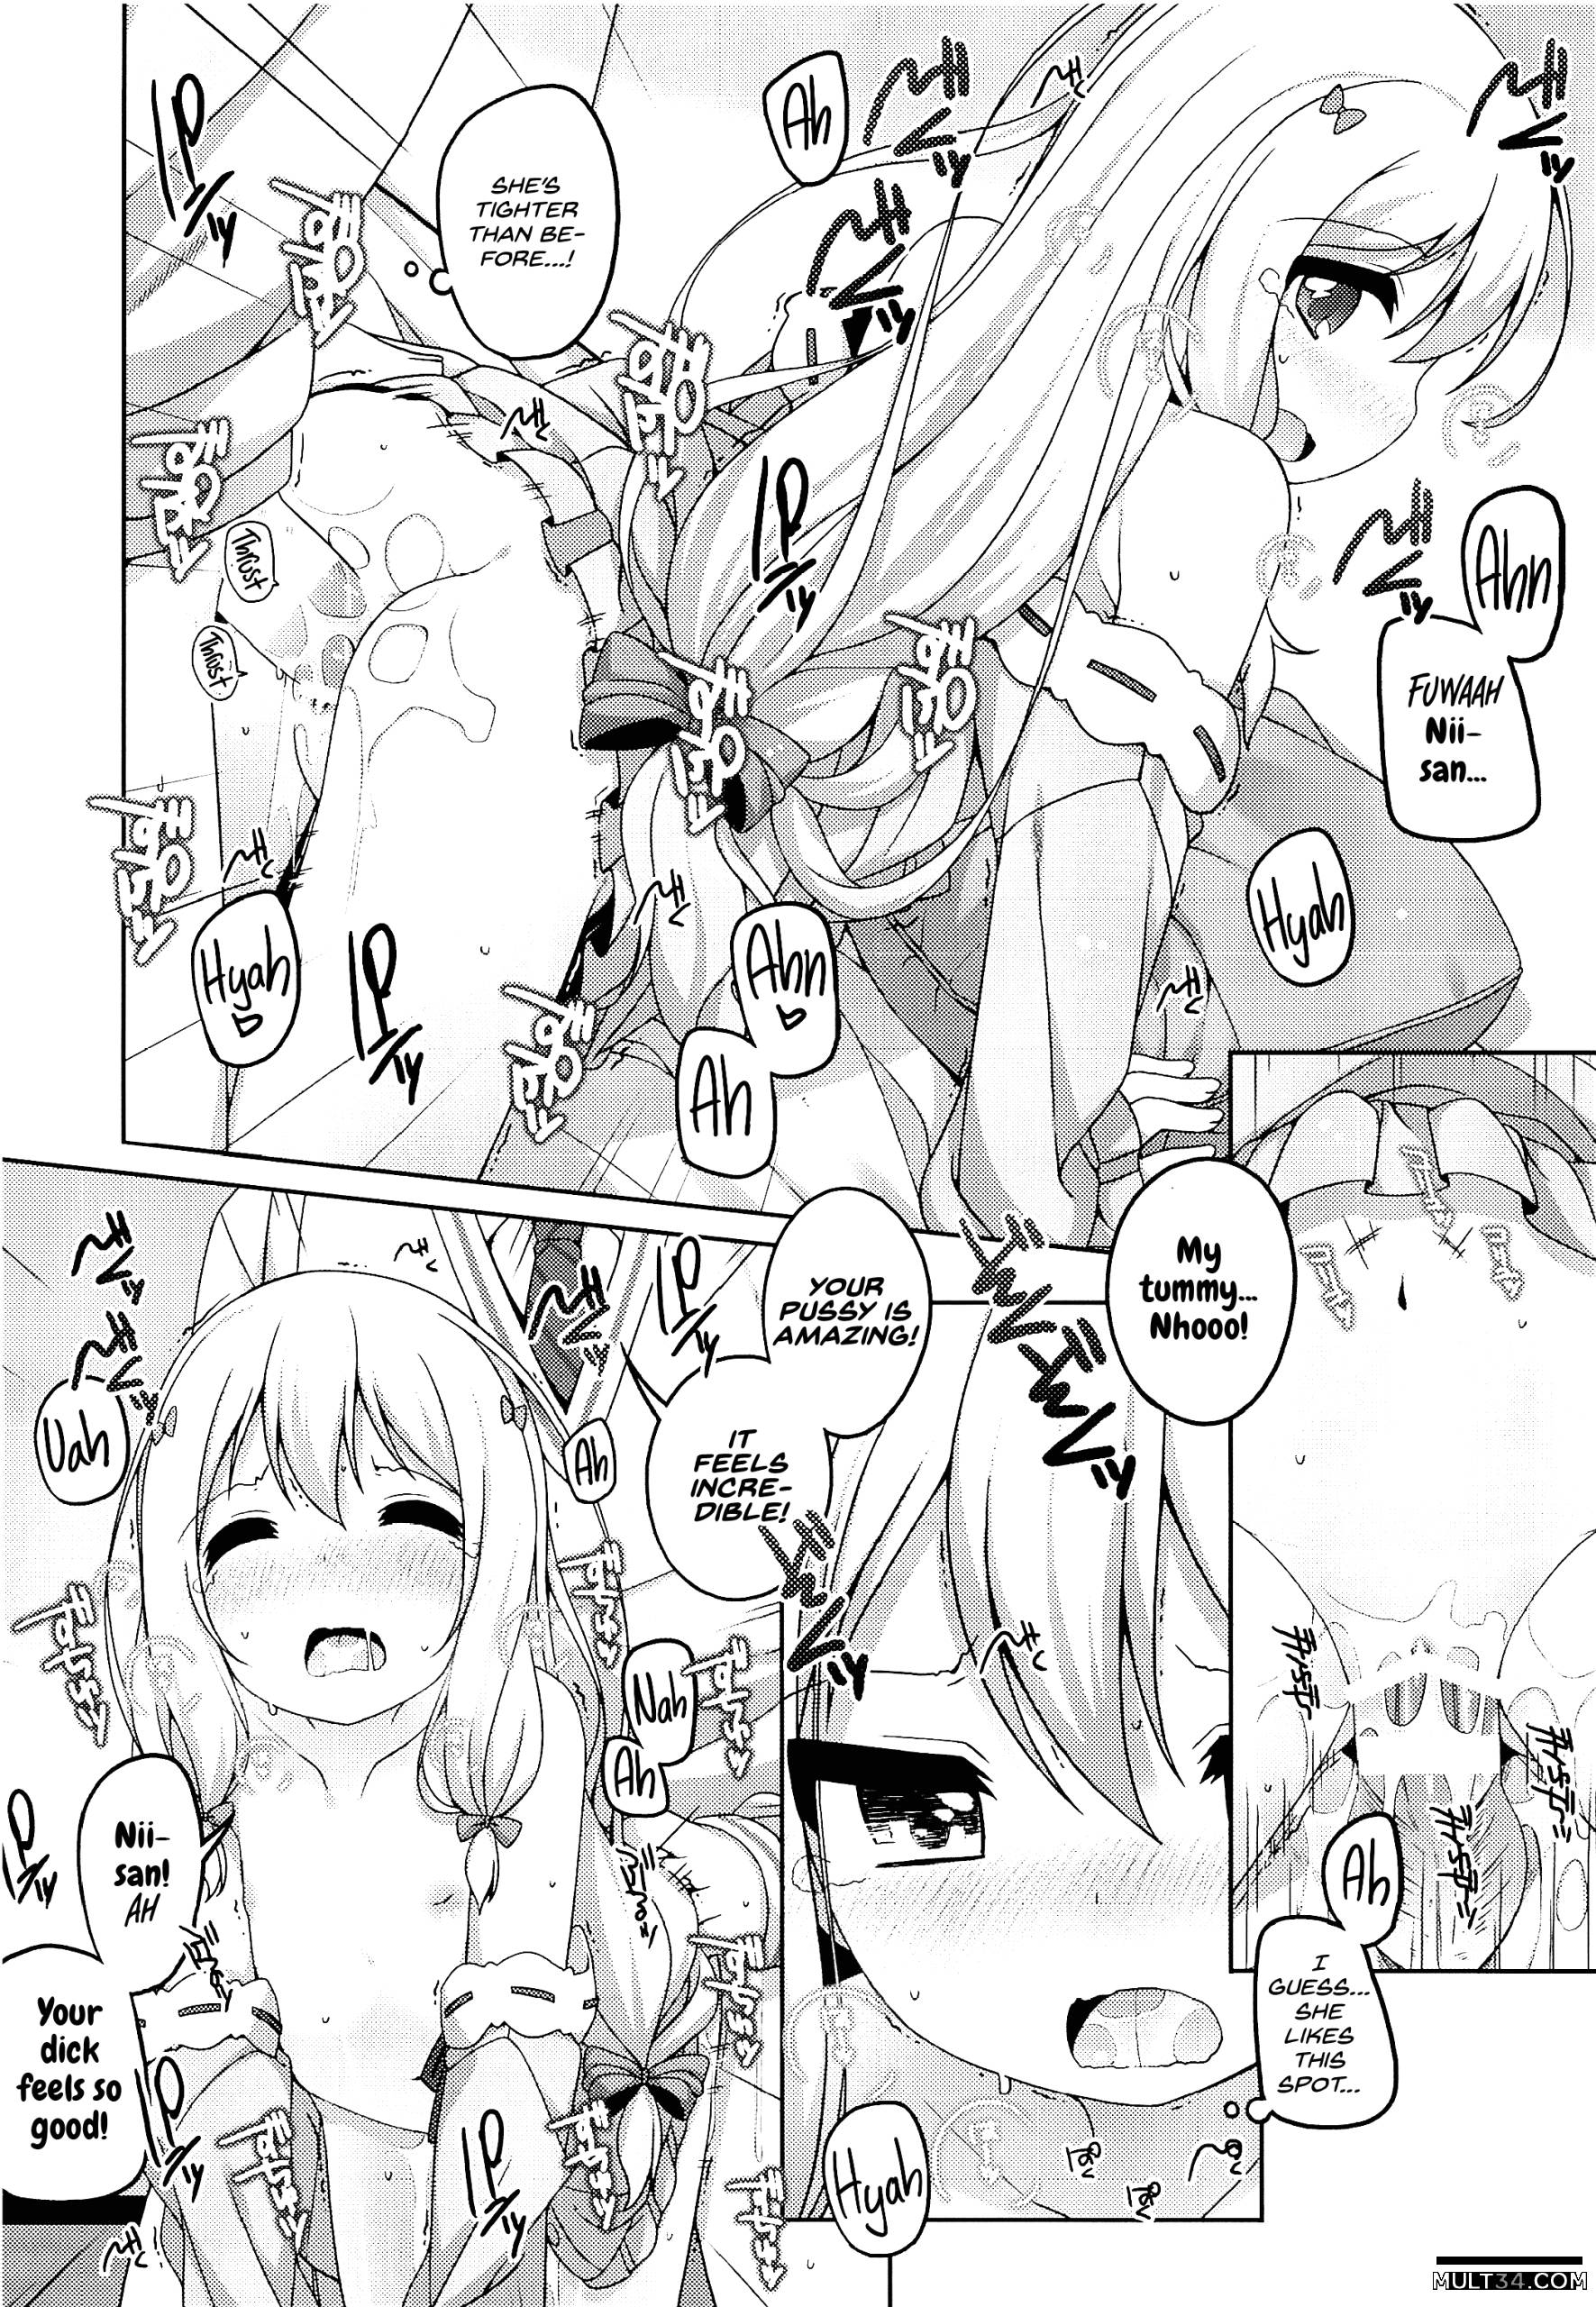 Sagiri-chan is cute page 7